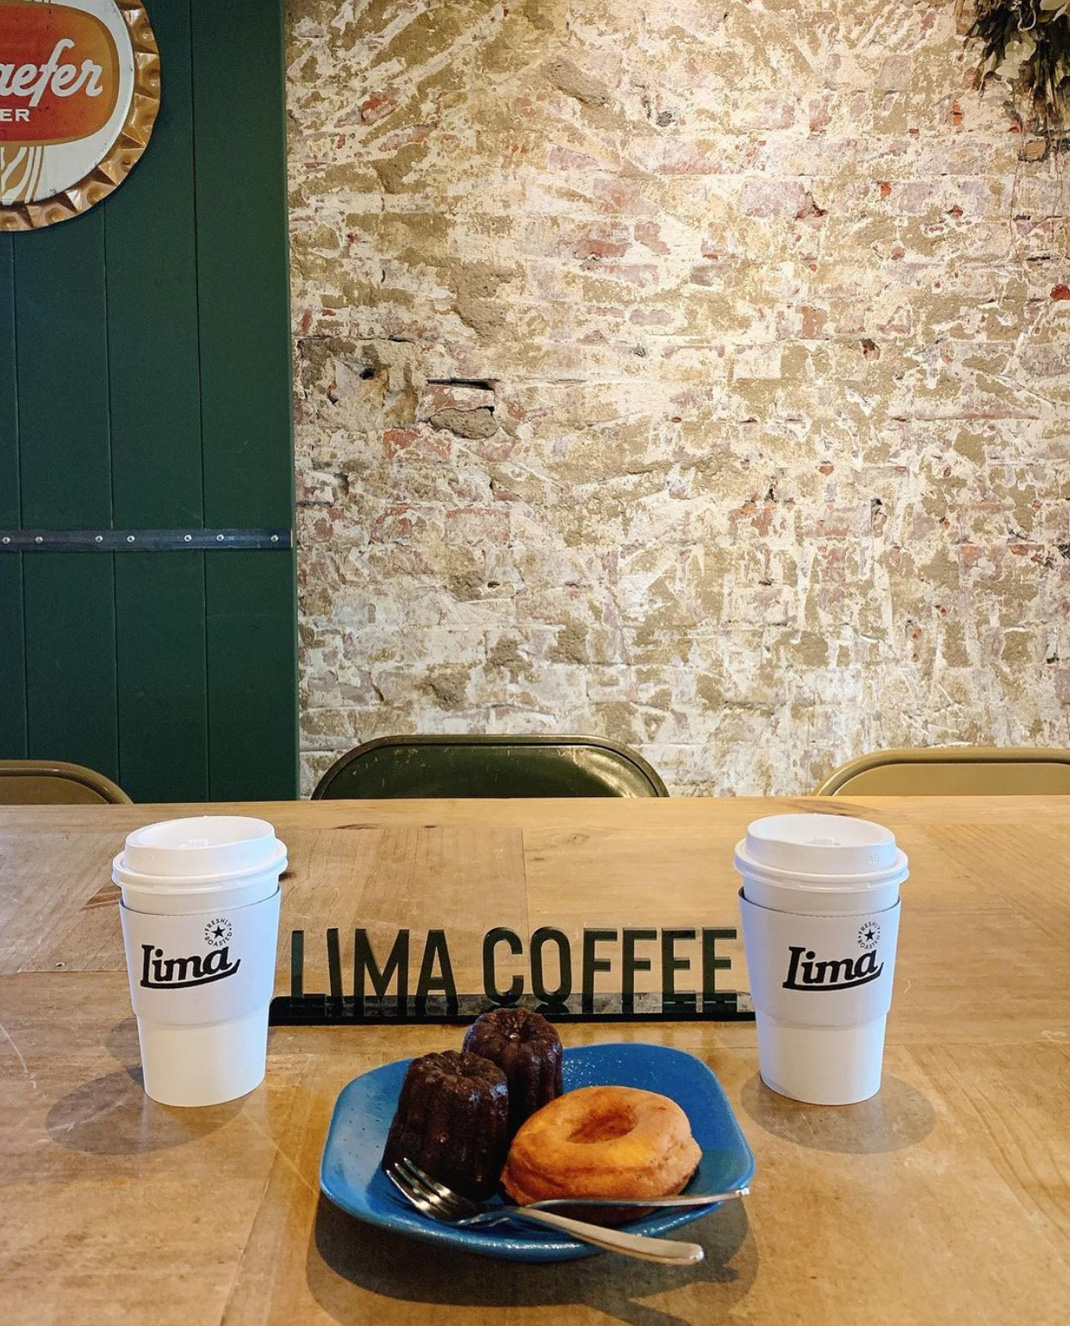 咖啡店LIMA COFFEE 日本 咖啡店 插图设计 字母设计 logo设计 vi设计 空间设计